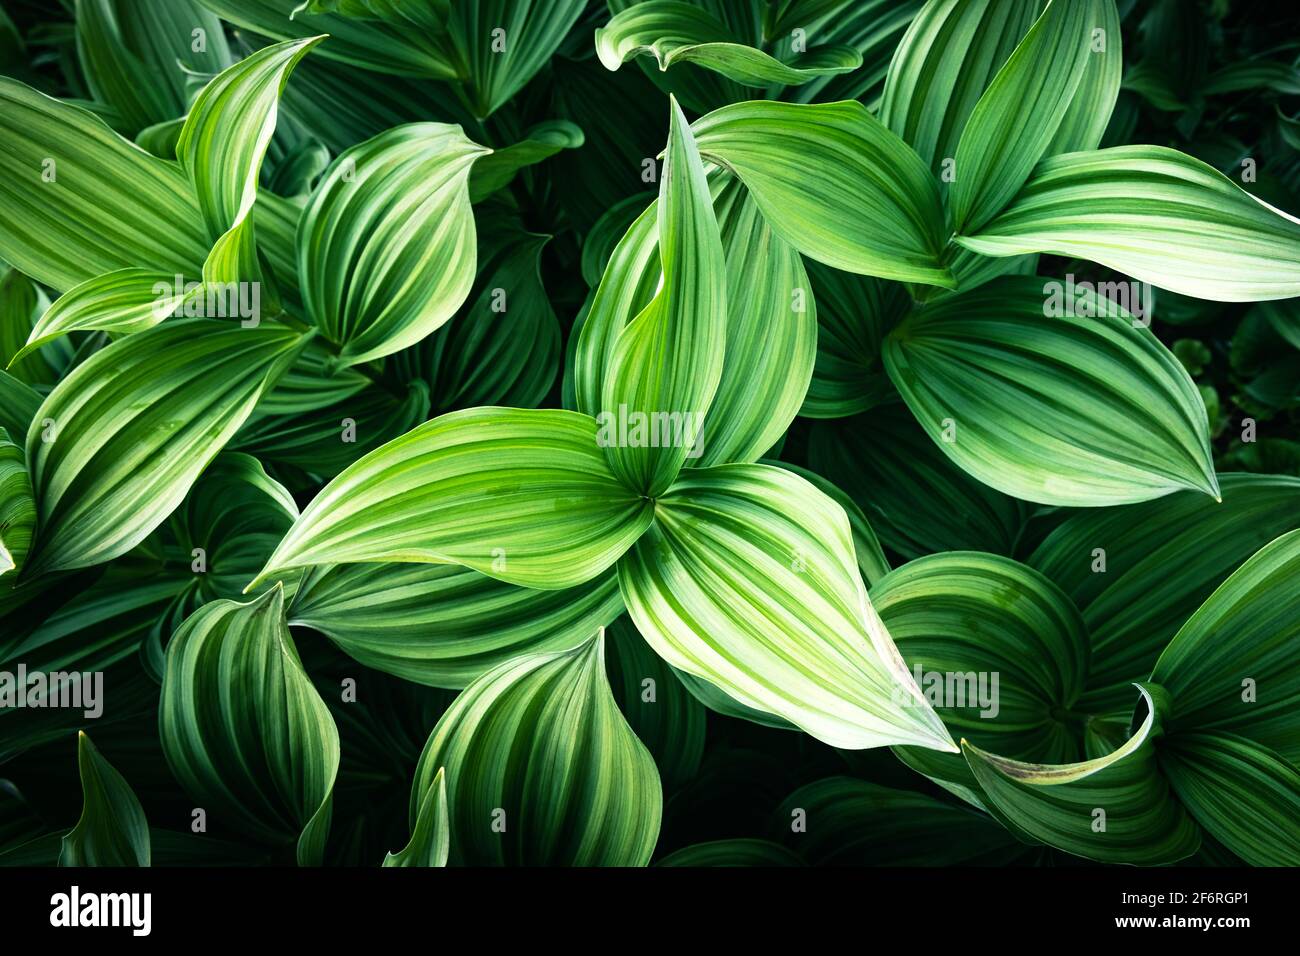 Les feuilles de plantes vertes se rapprochent. Arrière-plan de la nature Banque D'Images